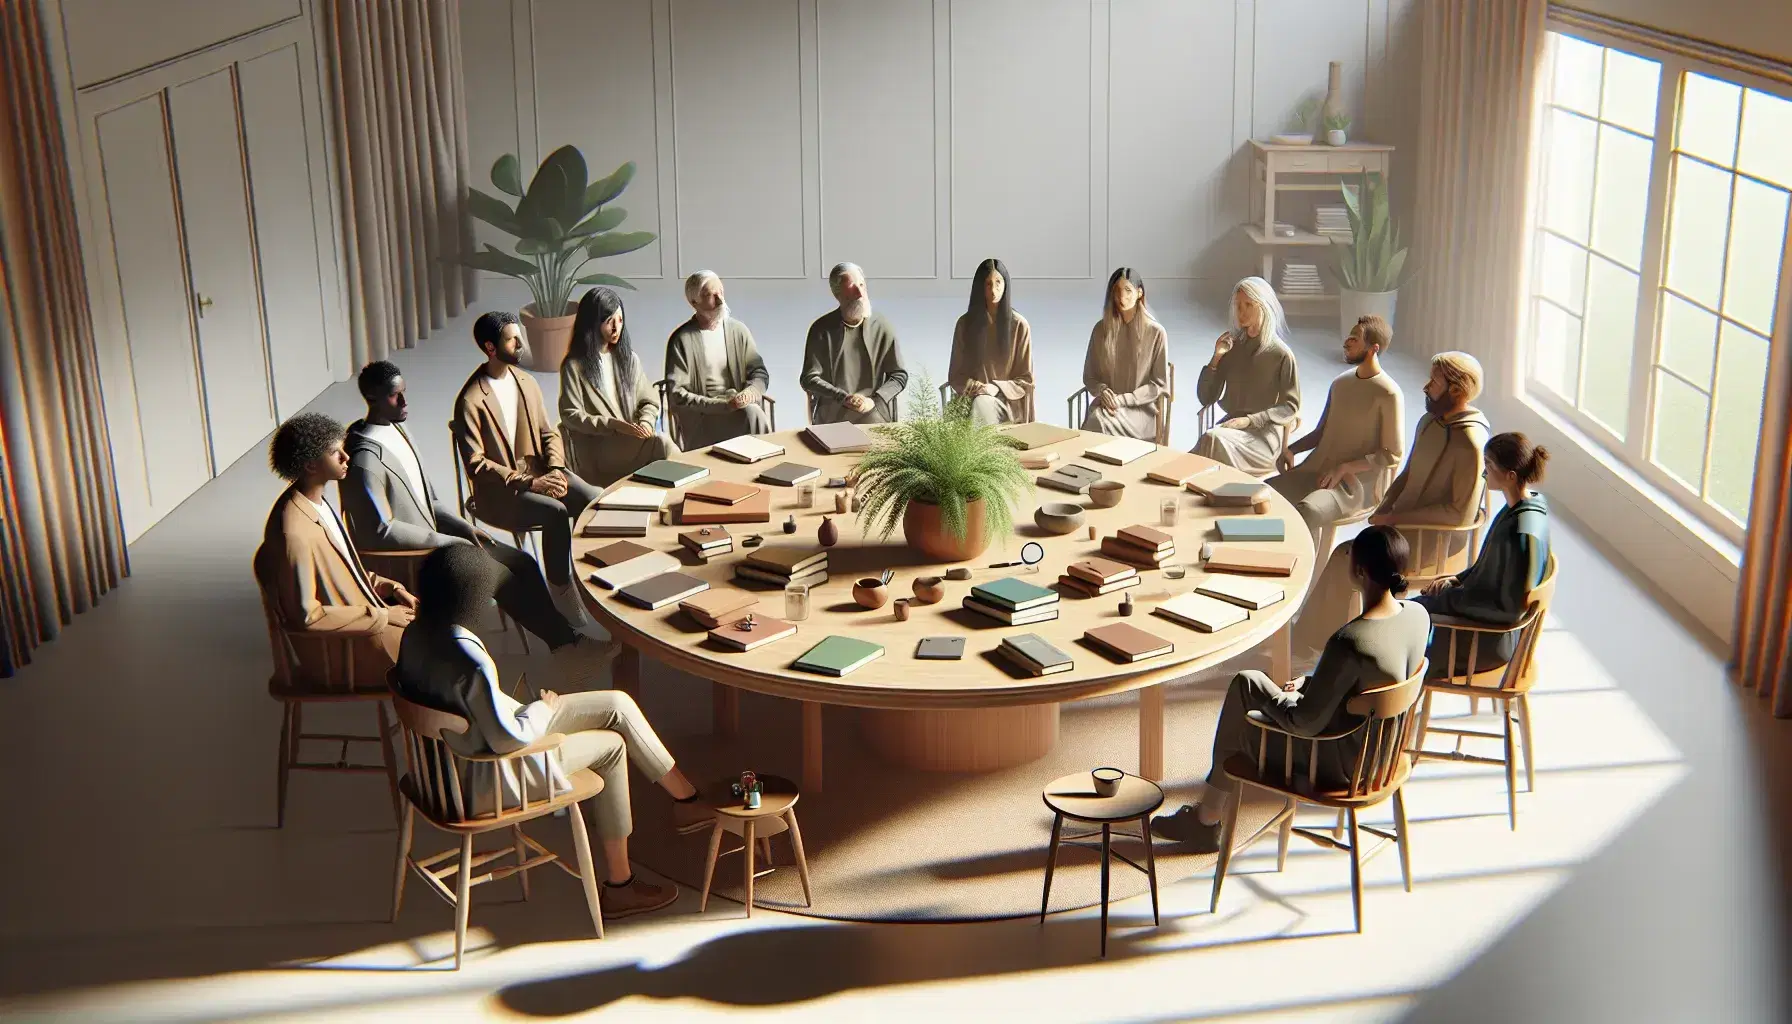 Grupo diverso de personas en animada discusión alrededor de una mesa redonda con herramientas de investigación en una sala iluminada naturalmente.